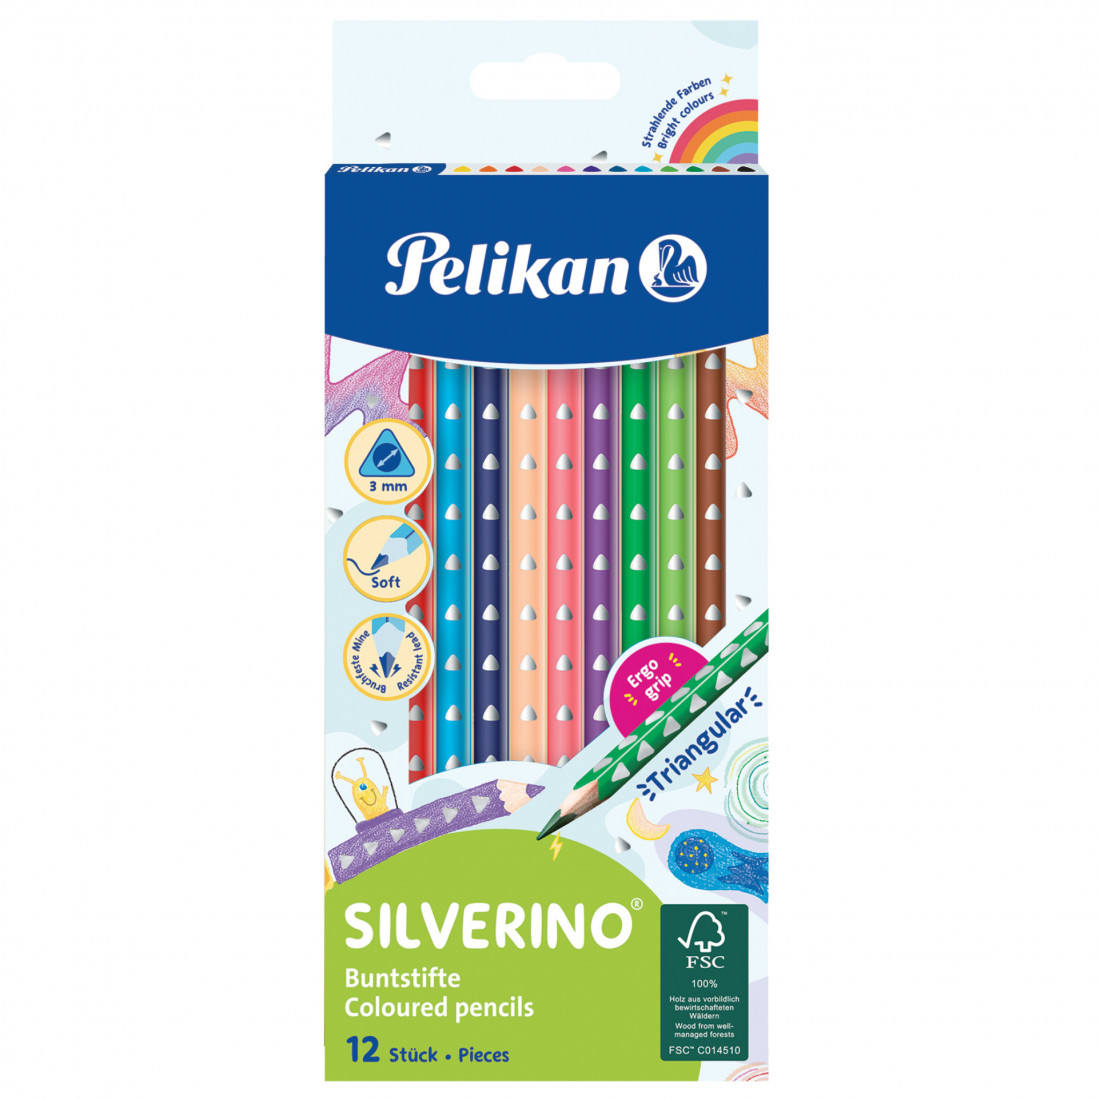 Pelikan Silverino Buntstifte  Coloured Pencils 12 pieces  700634